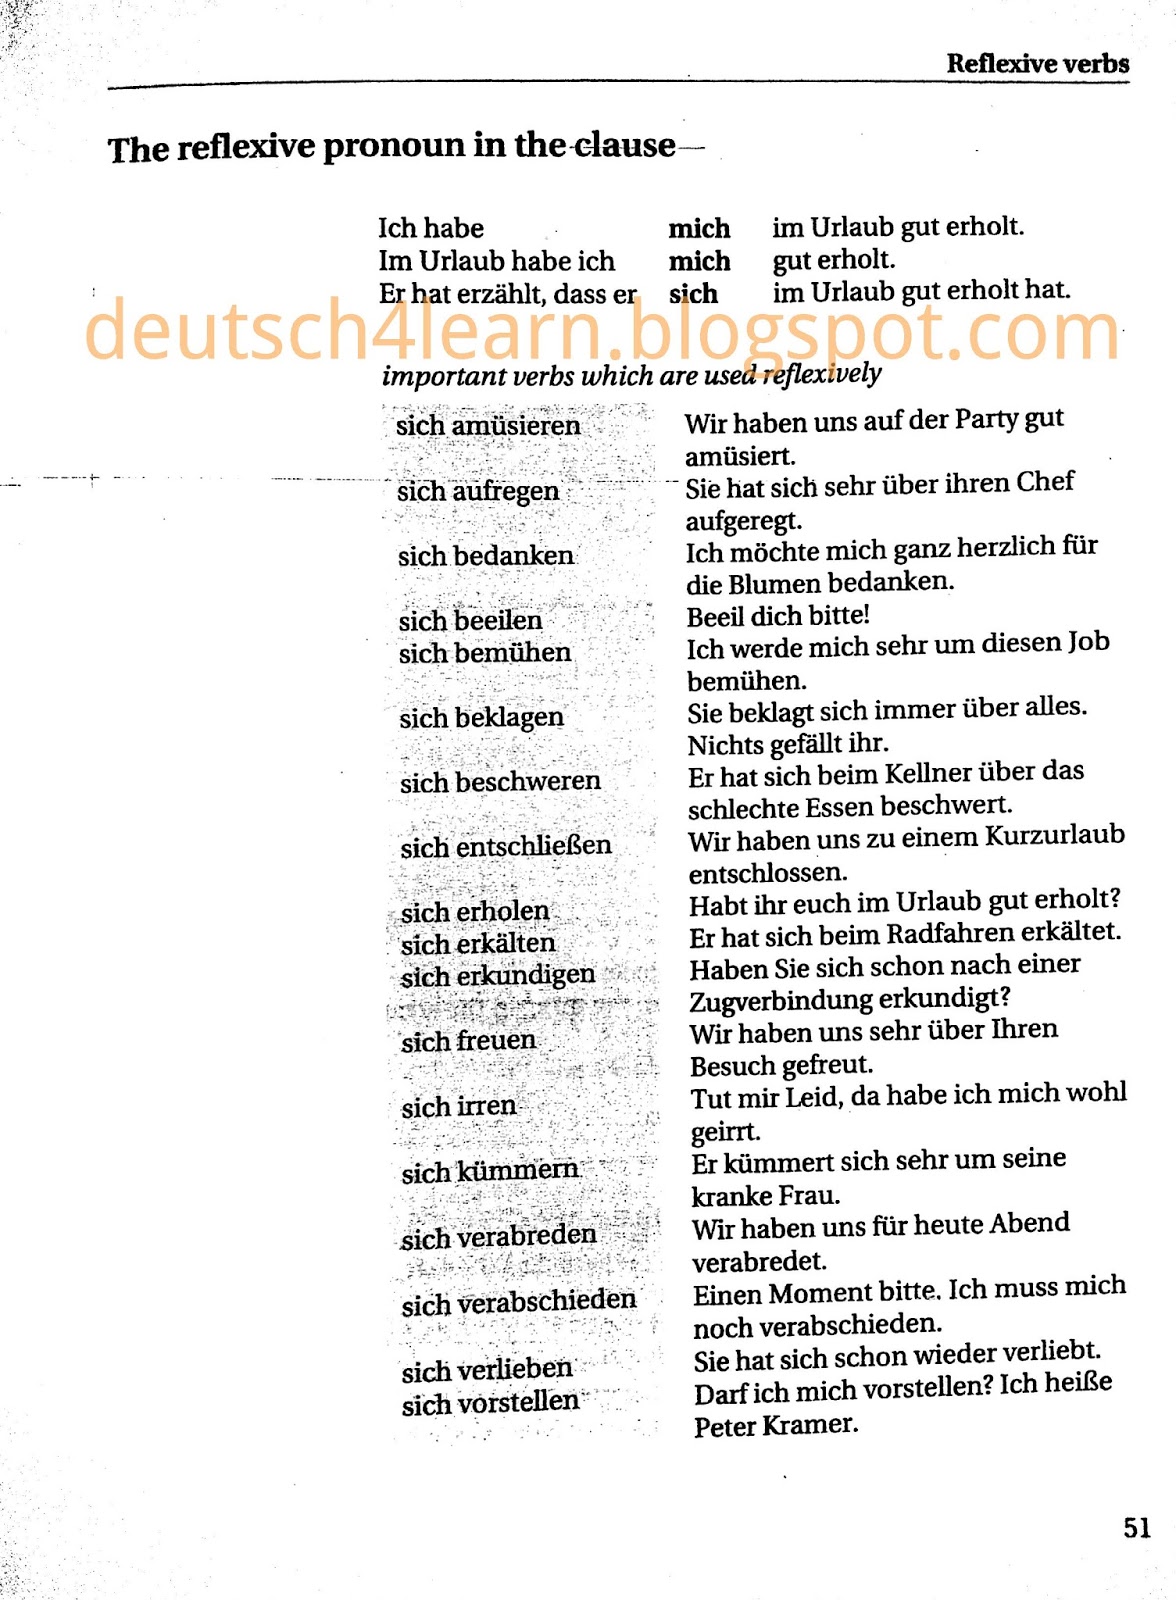 german-reflexive-verbs-in-2021-german-phrases-german-language-learn-german